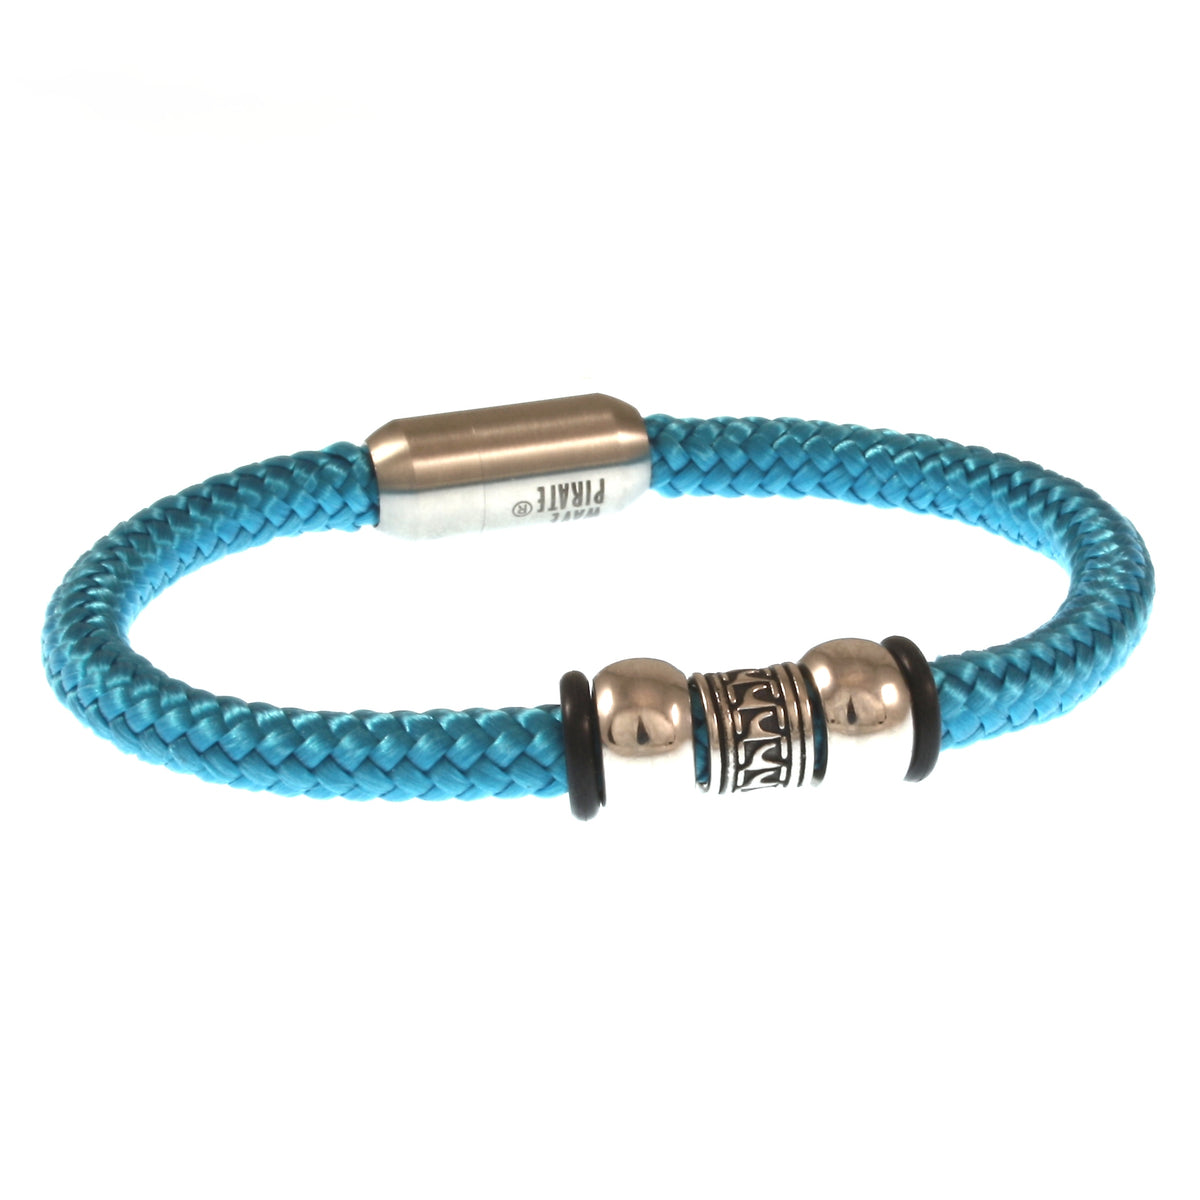 Herren-Segeltau-Armband-atoll-blau-geflochten-Edelstahlverschluss-vorn-wavepirate-shop-st